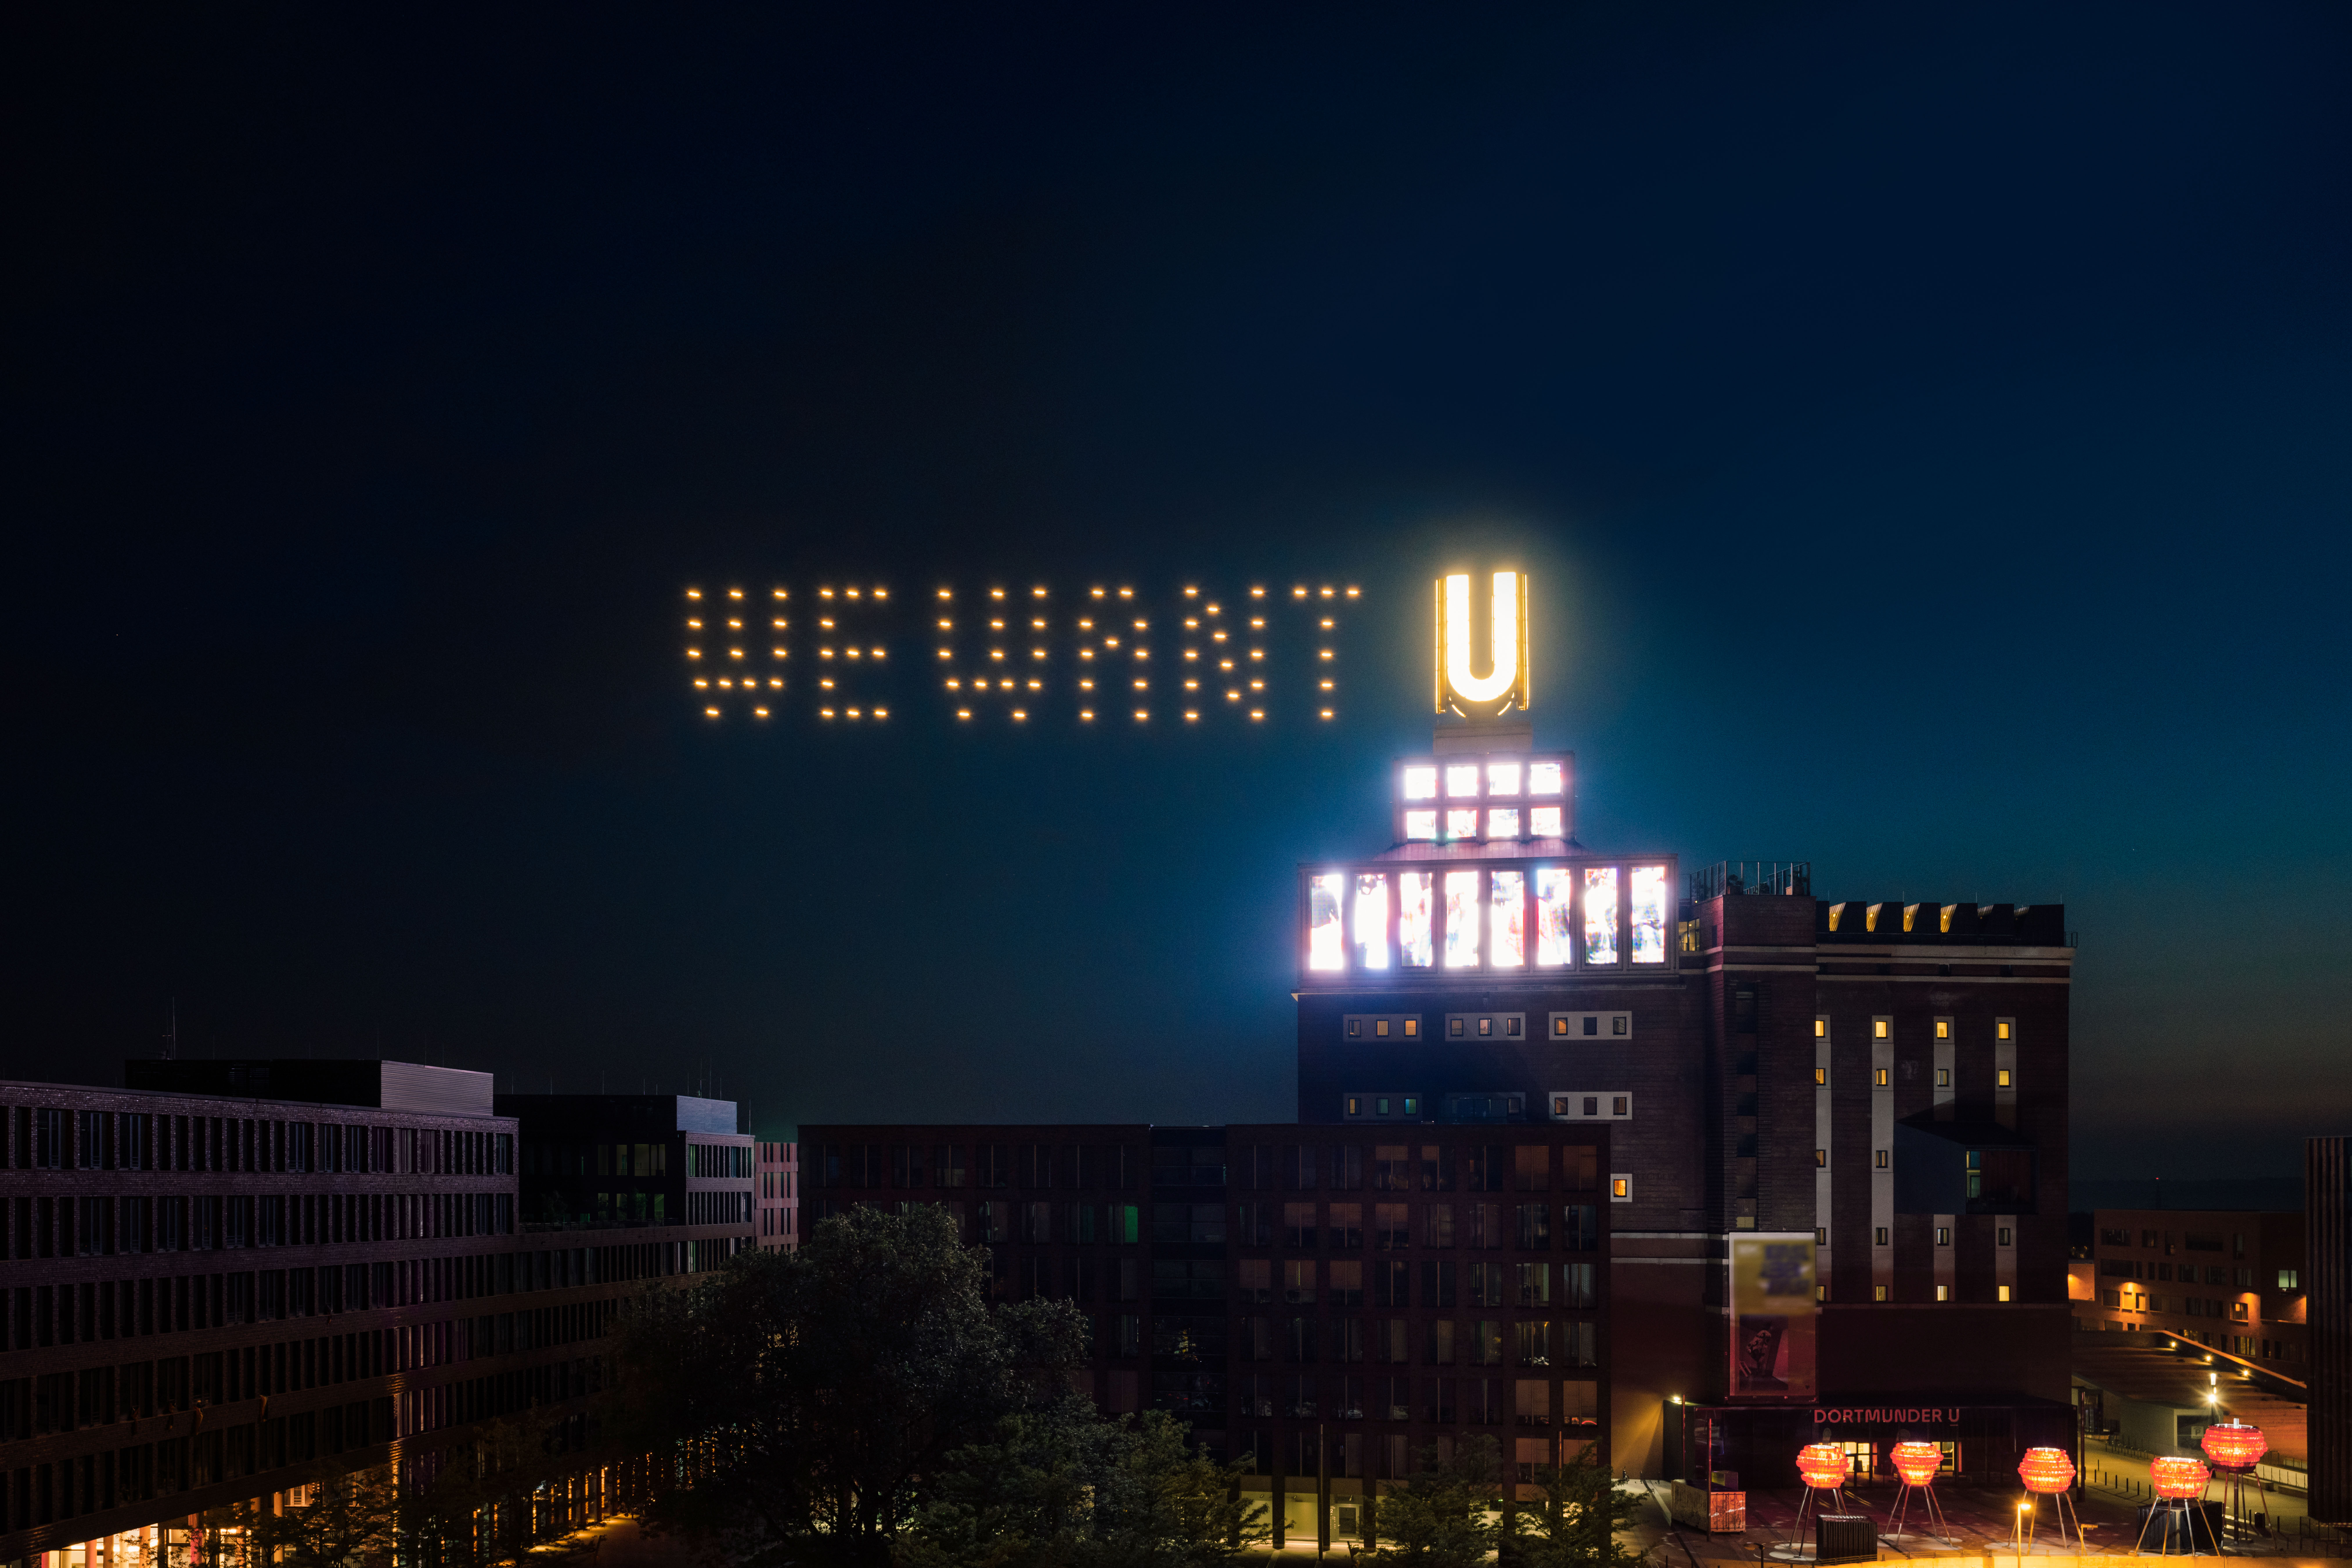 Dortmunder U bei Nacht mit leuchtenden Drohnen